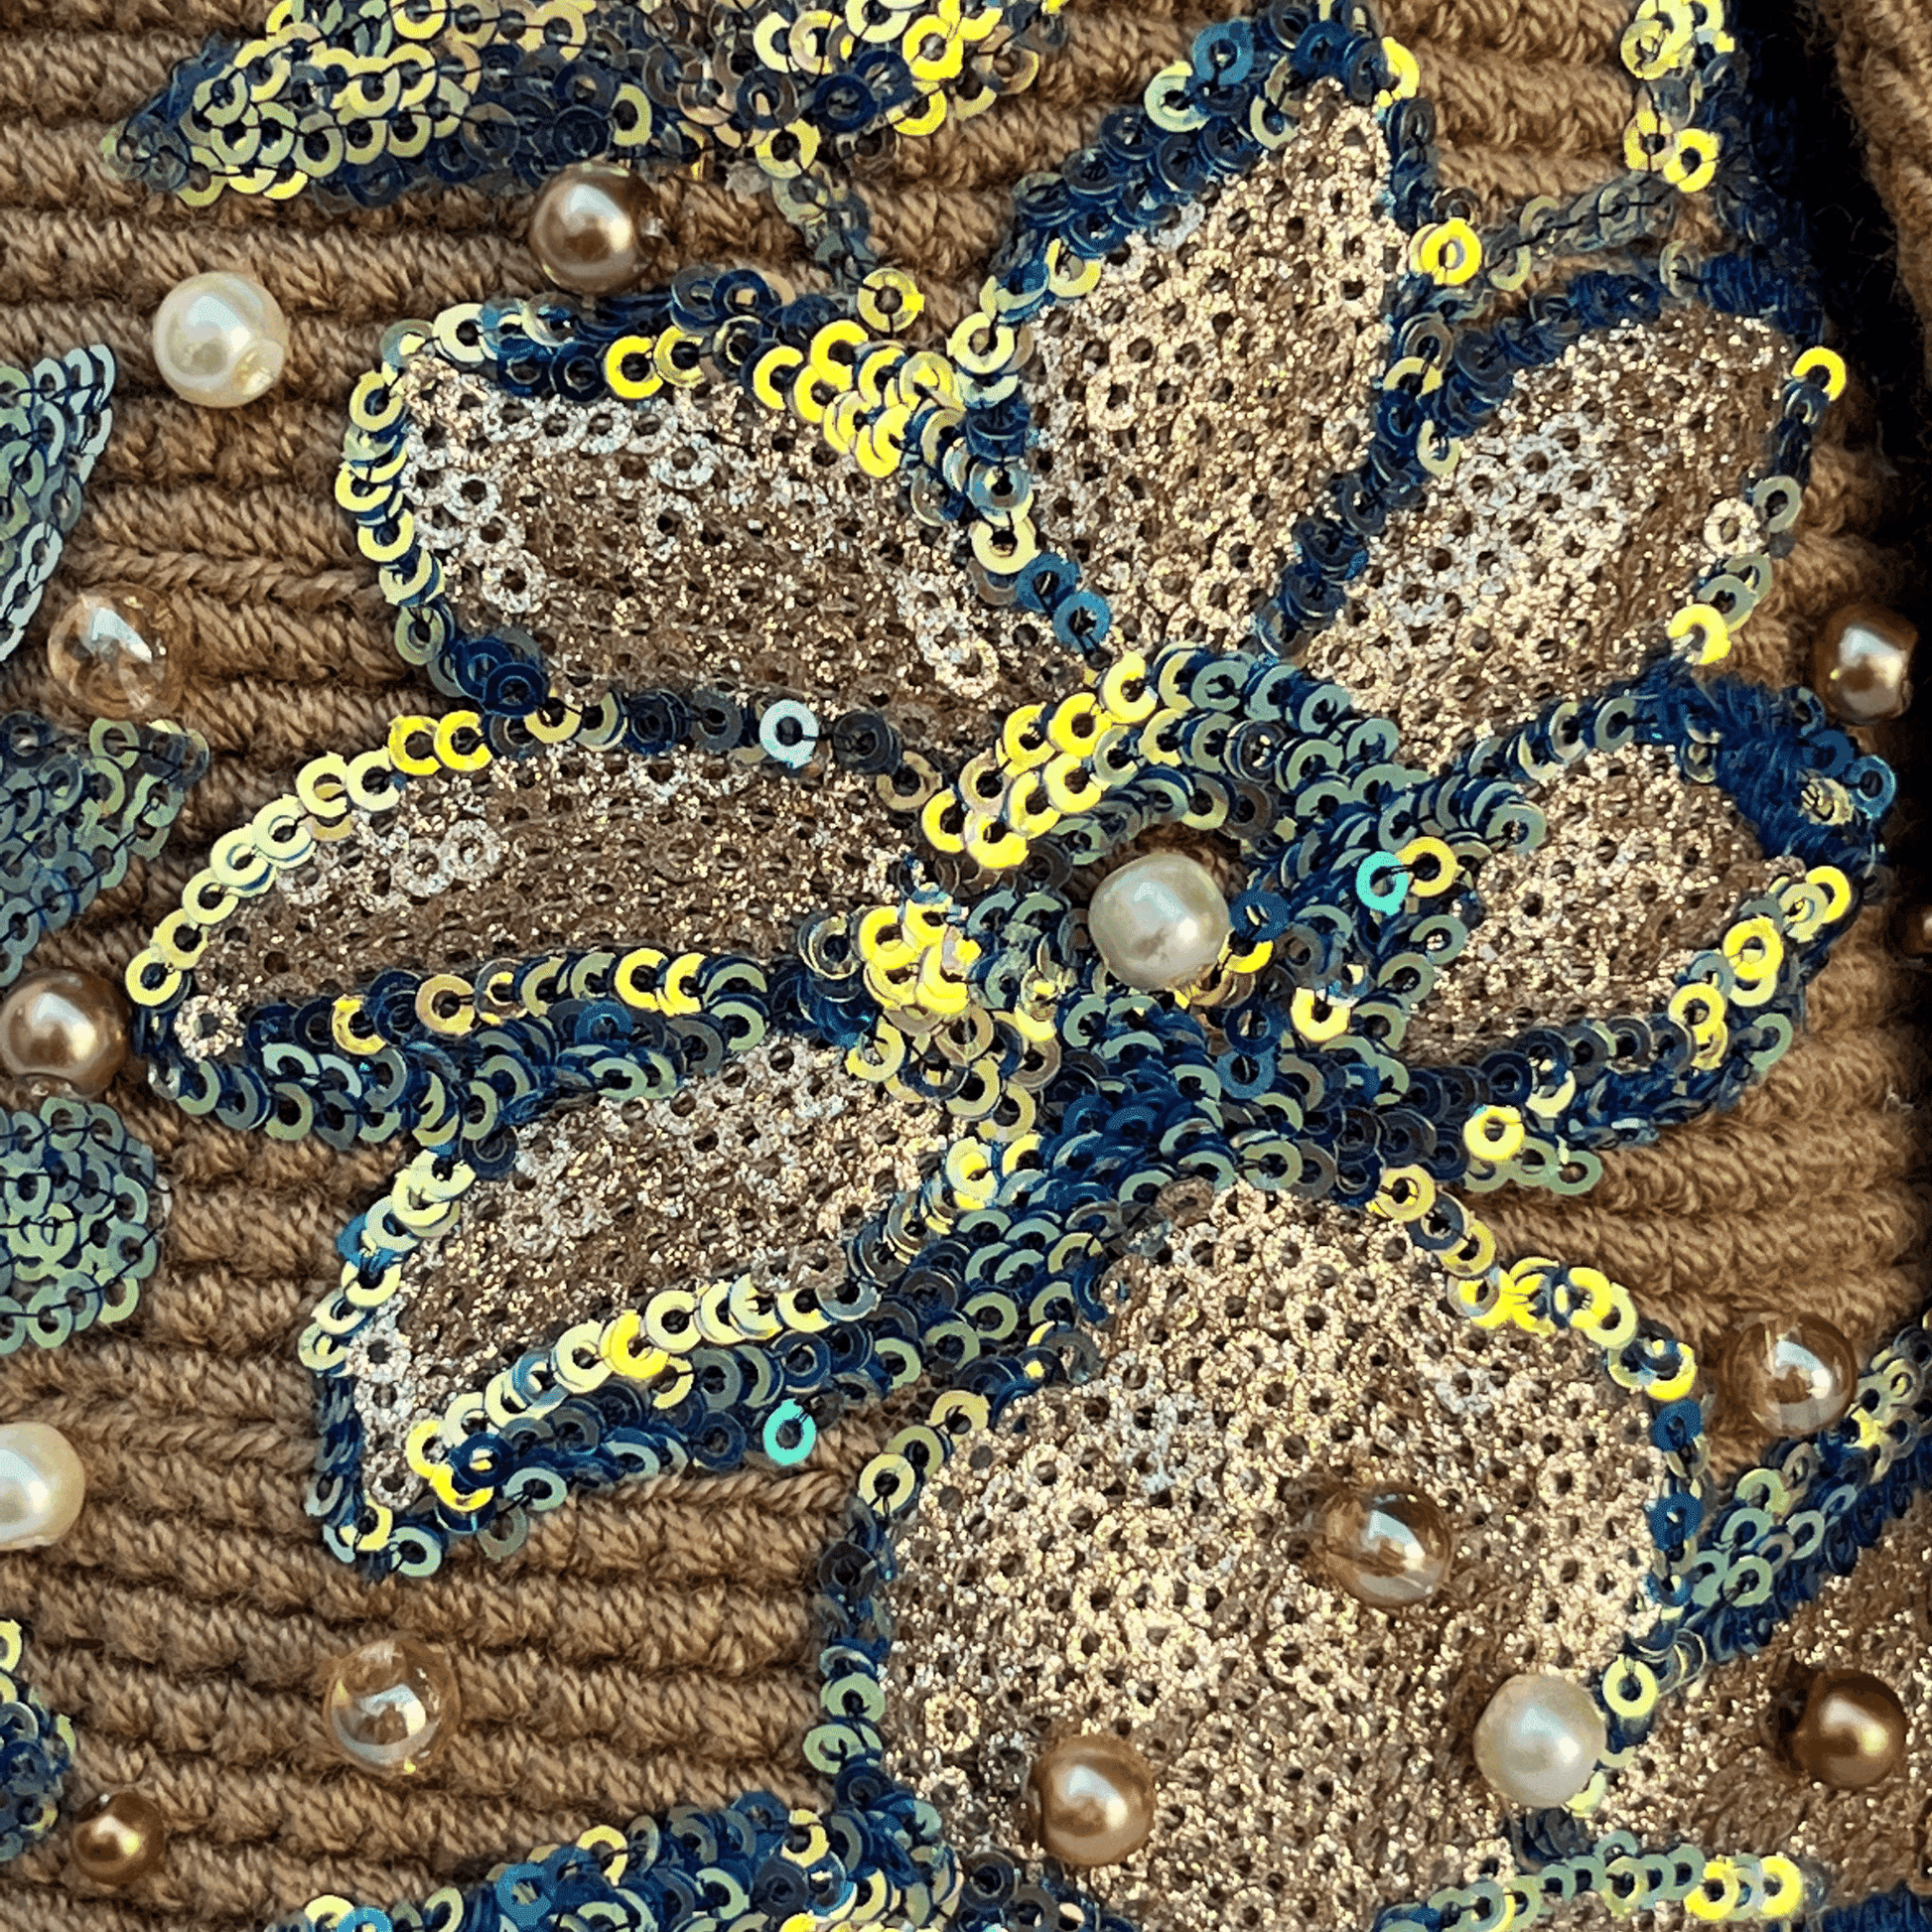 Detalle del recamado de mochila wayuu con flores de lentejuelas caqui y azul